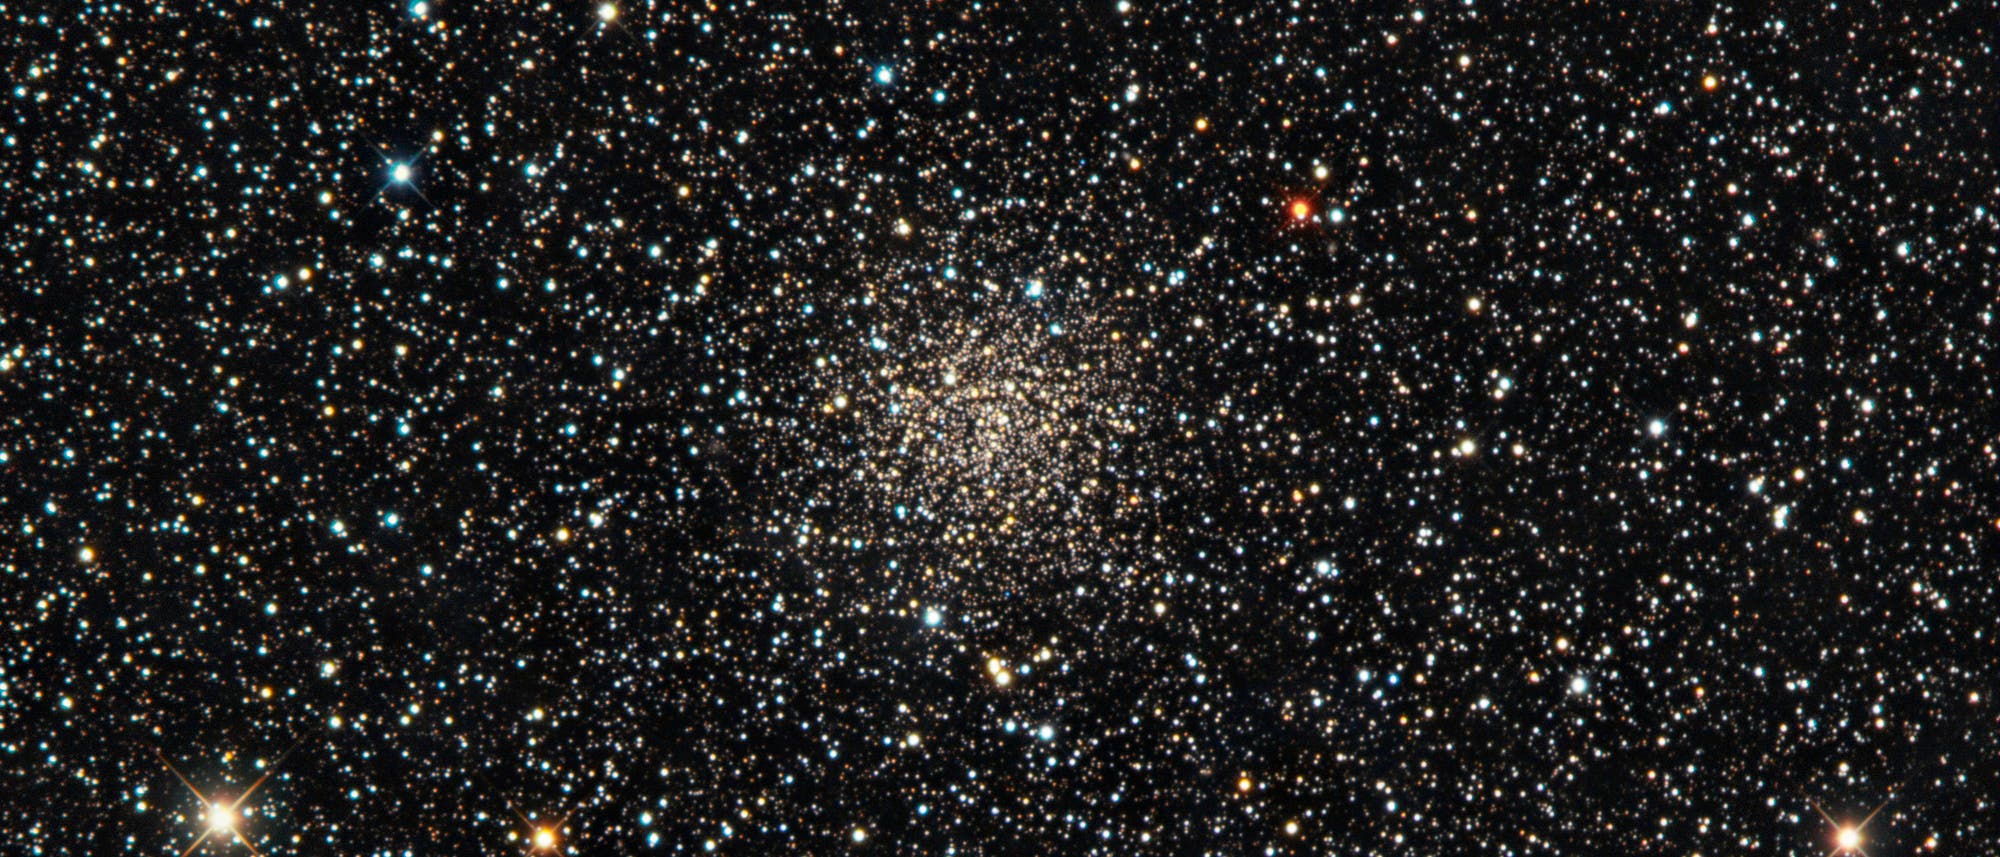 Der offene Sternhaufen NGC 6791 im Sternbild Leier enthält zahlreiche Rote Riesen.